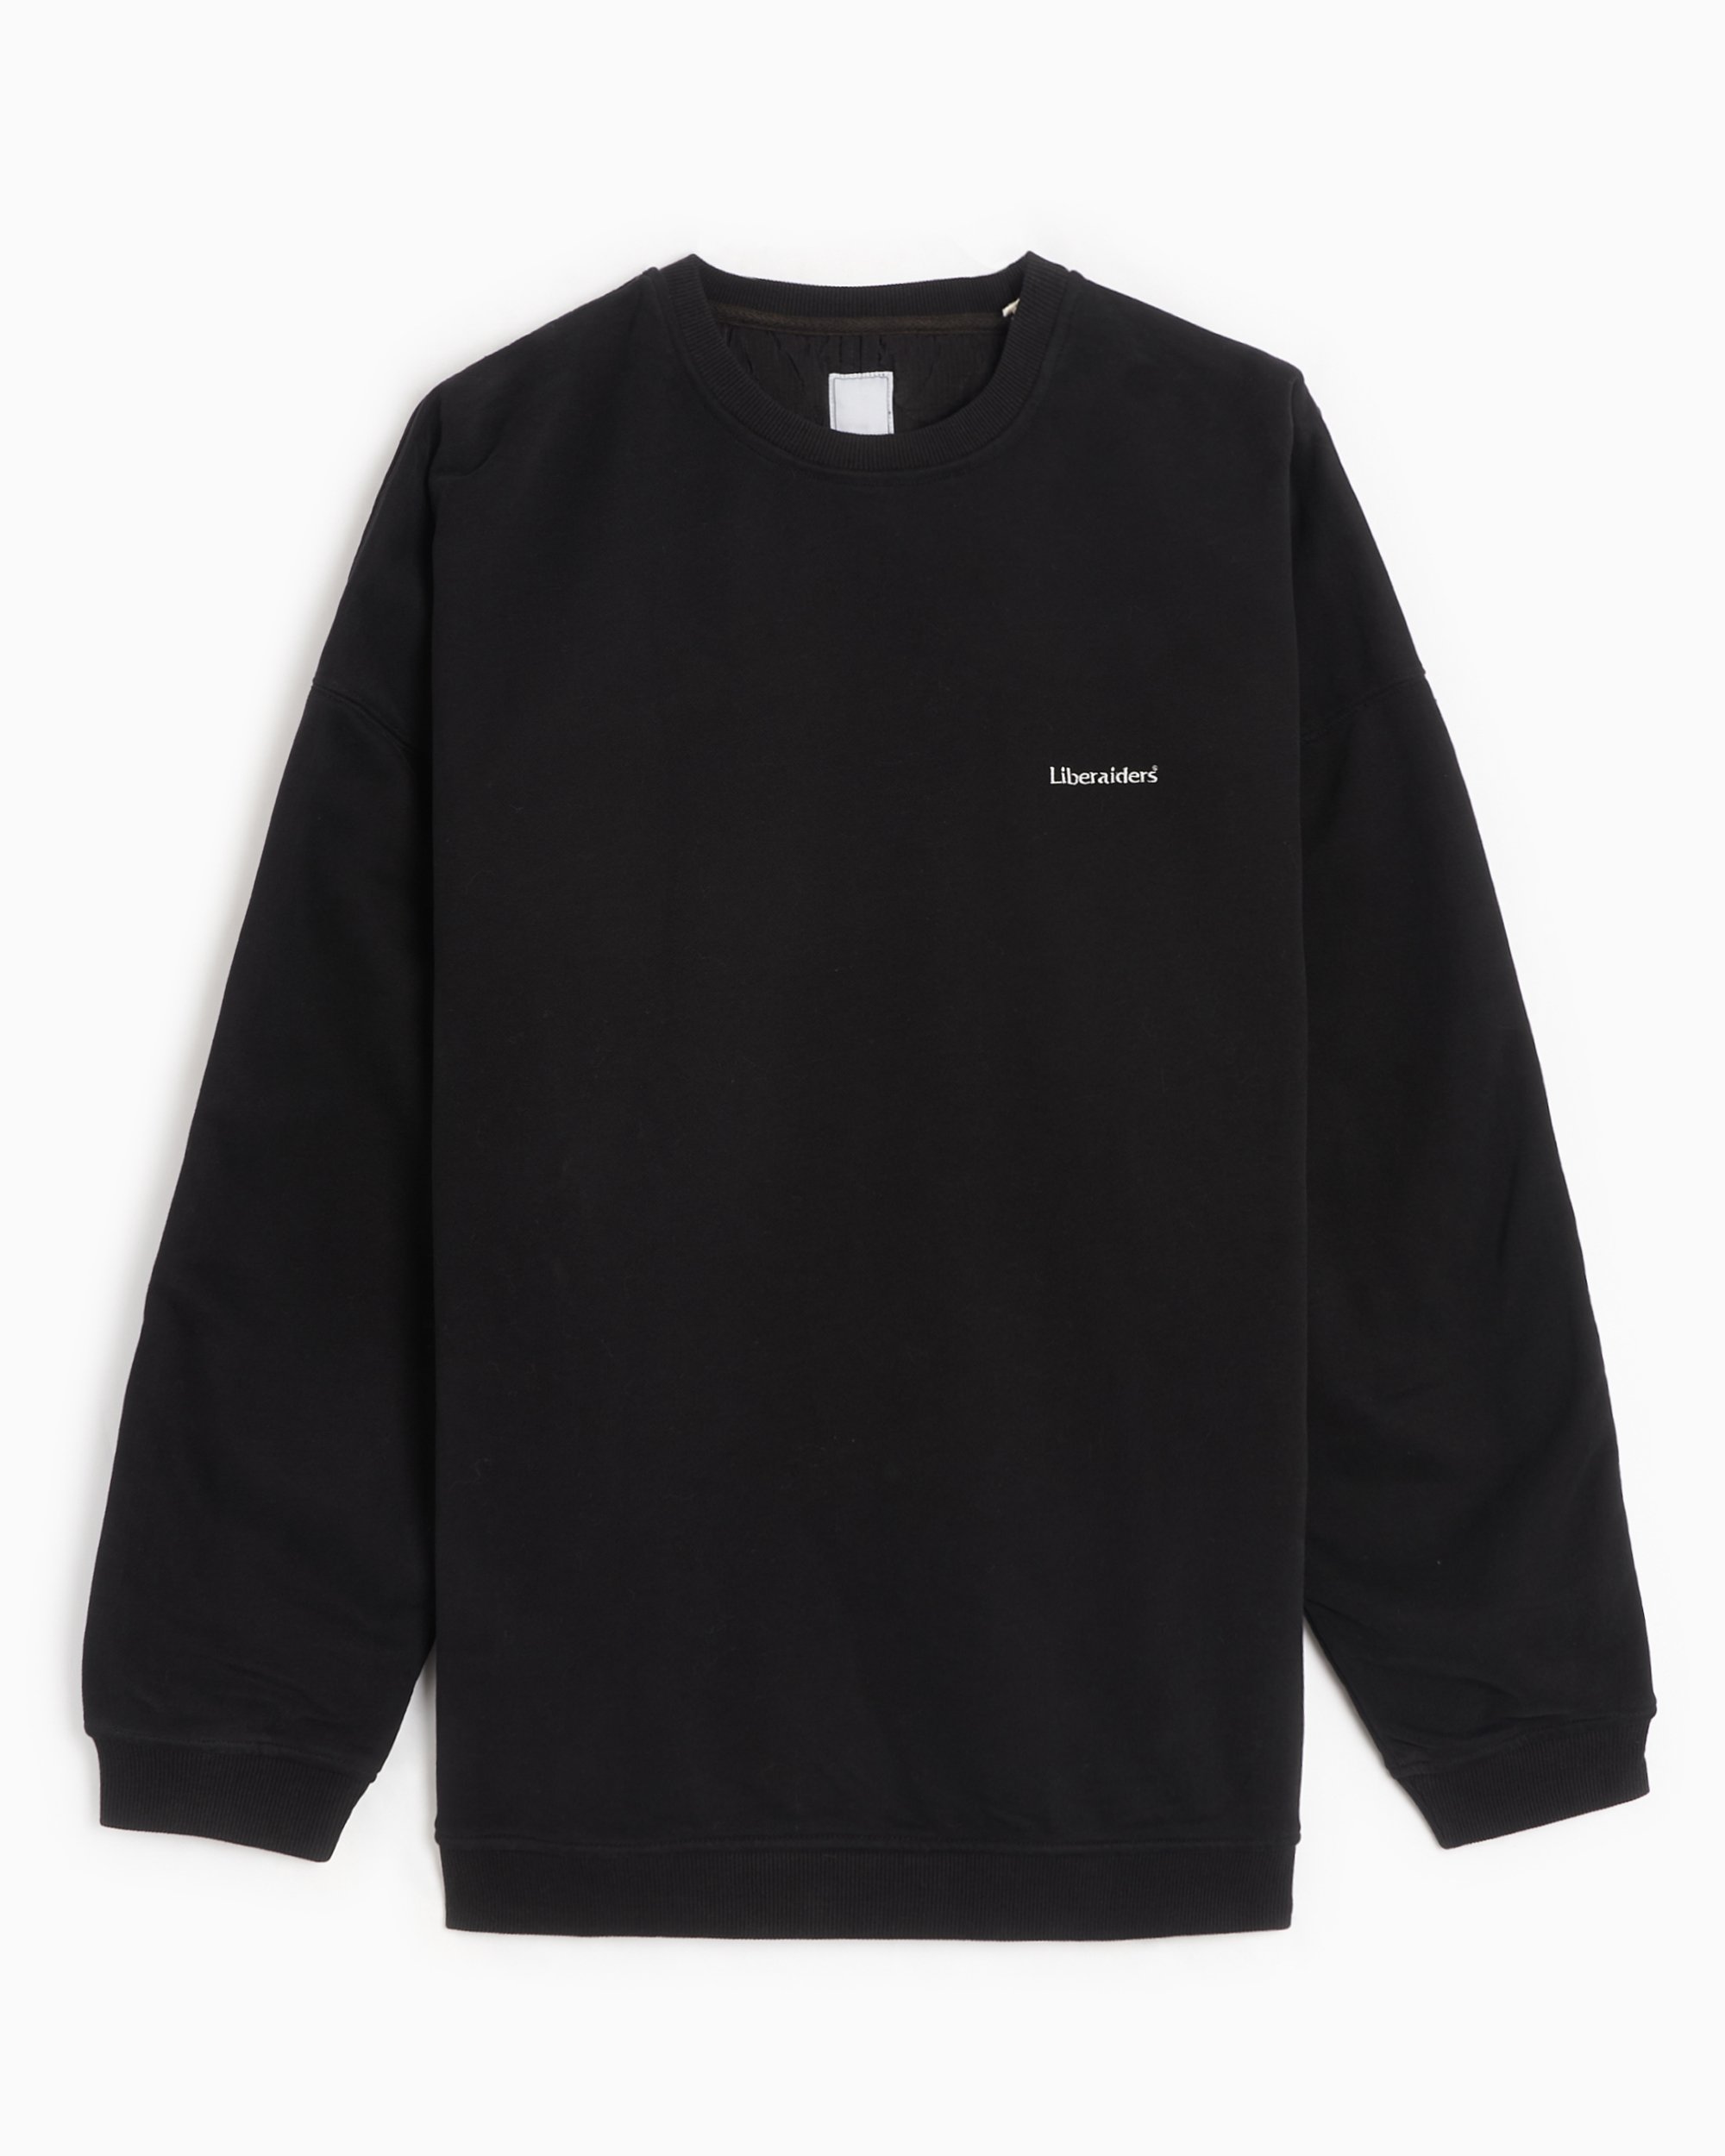 Liberaiders® Men's Fleece Quilted Sweatshirt Black 753042303